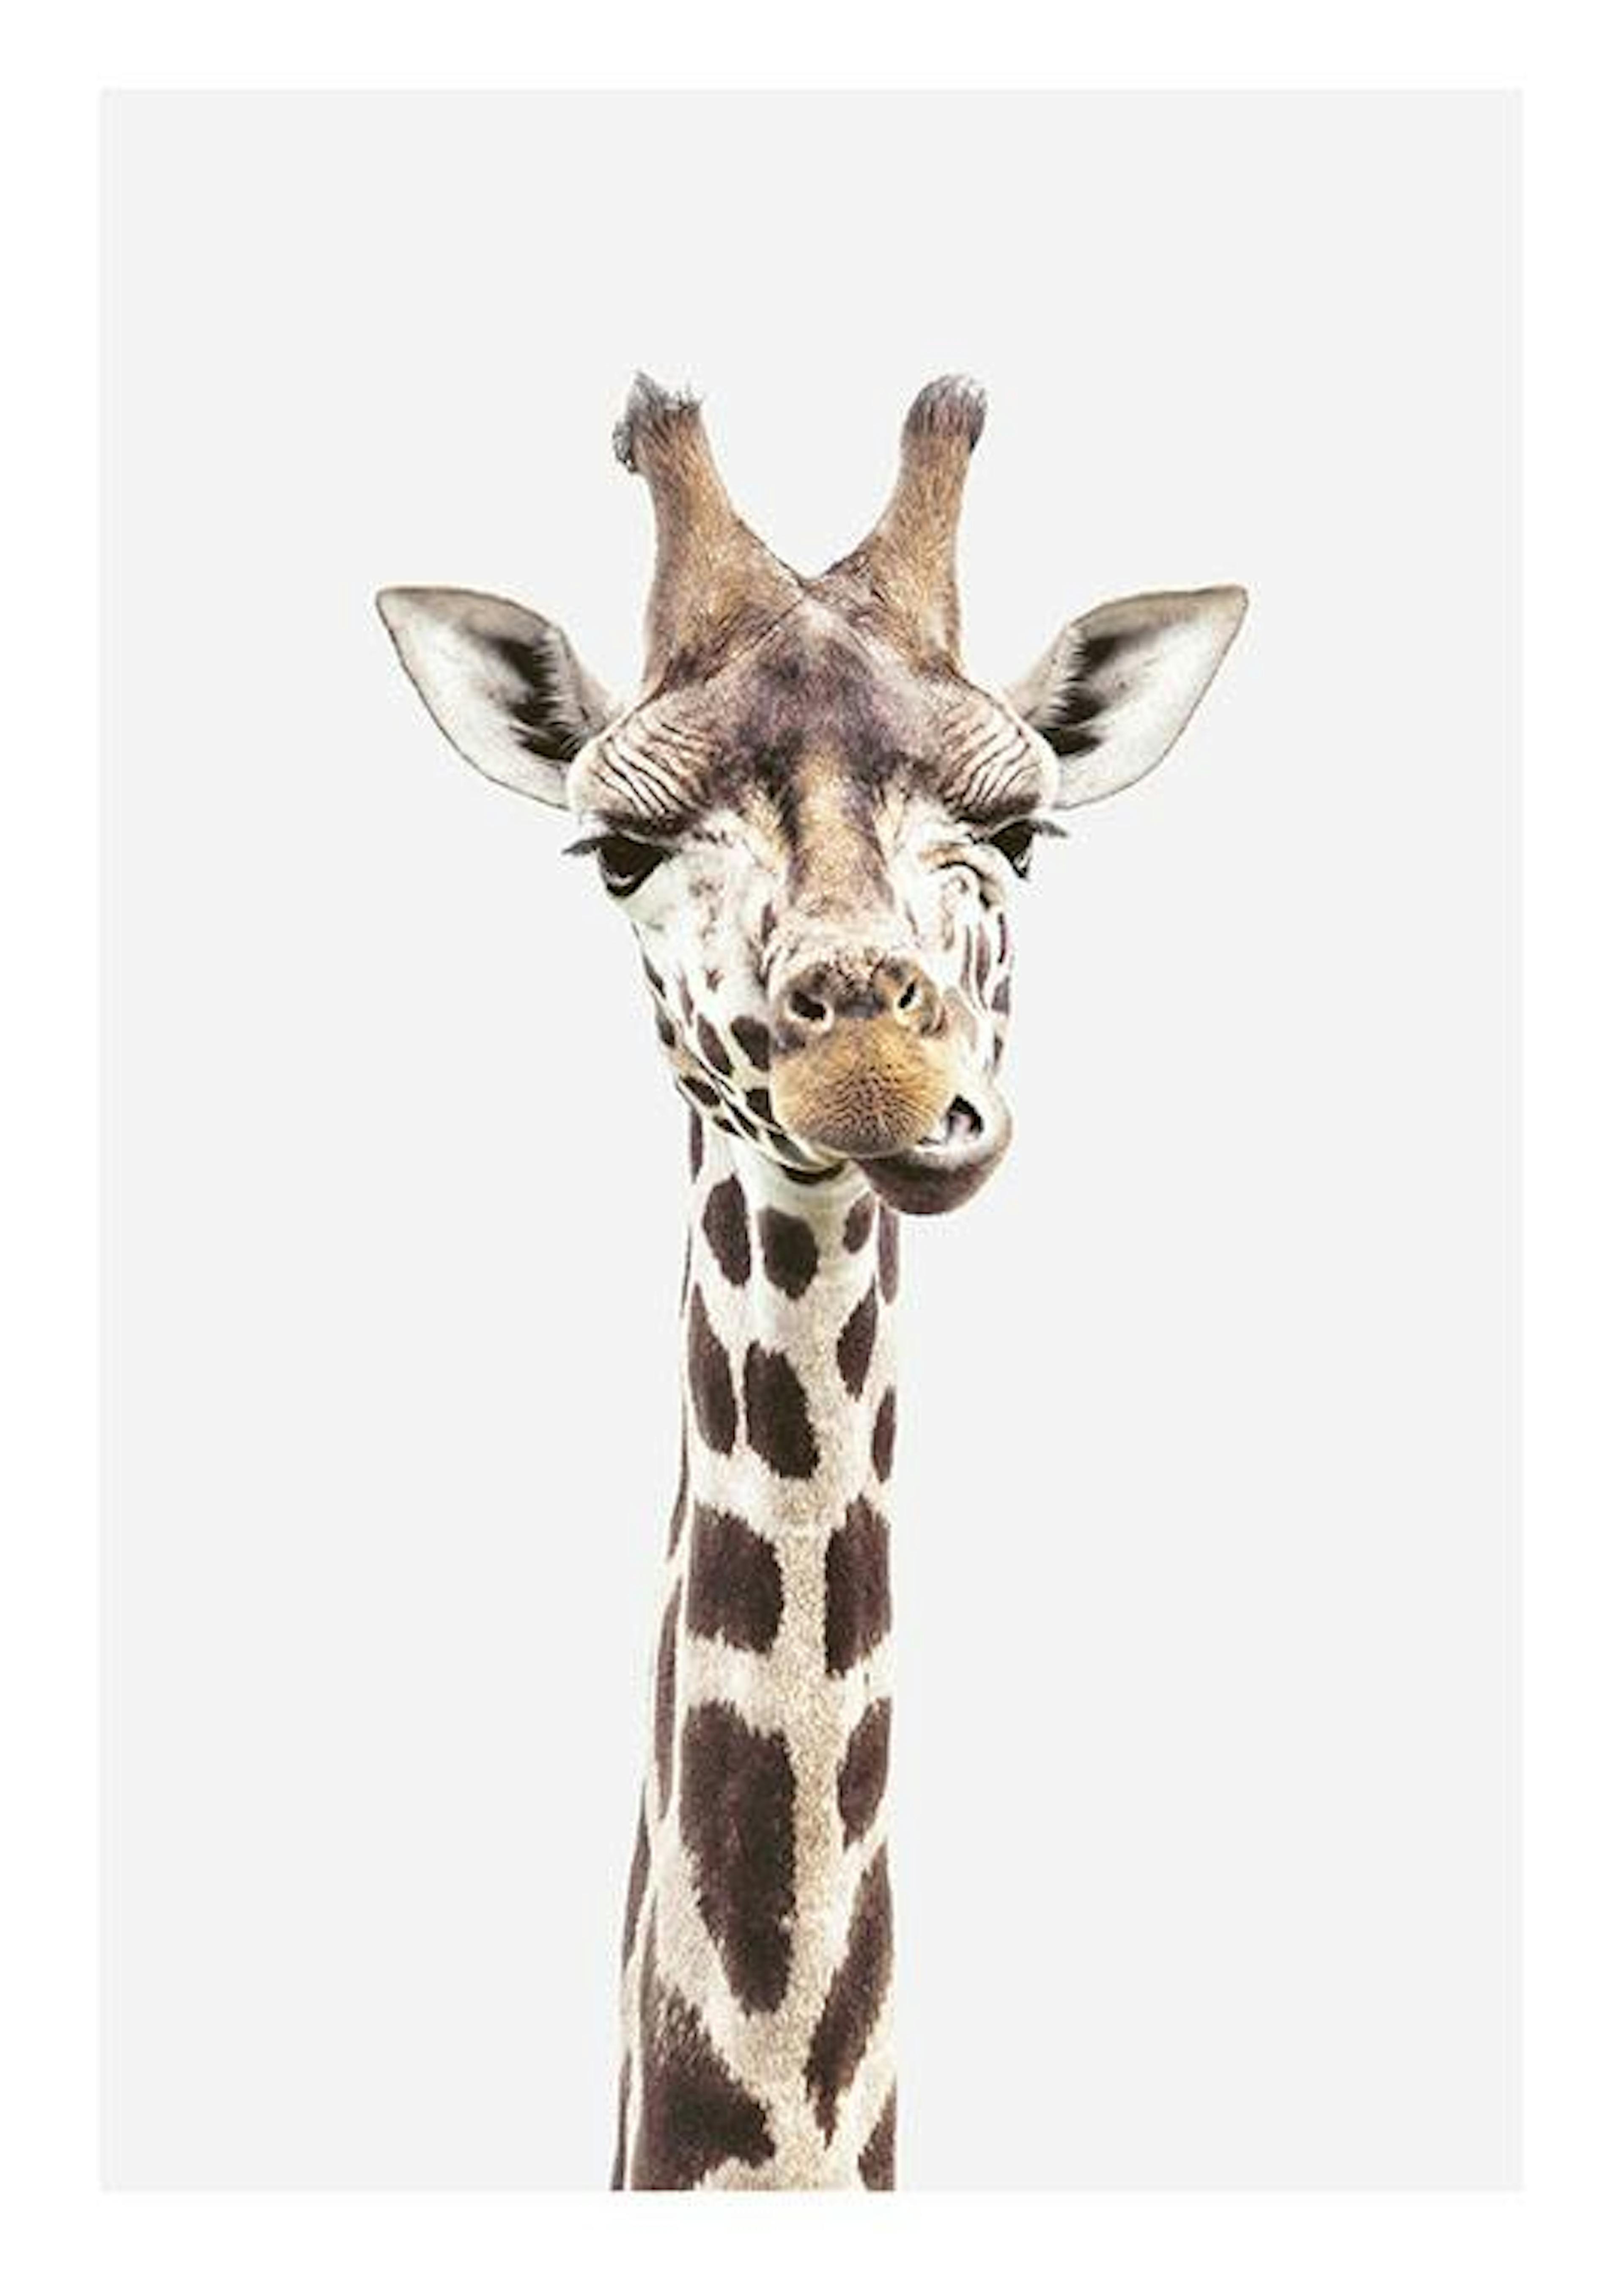 Baby Giraffe Plakat 0